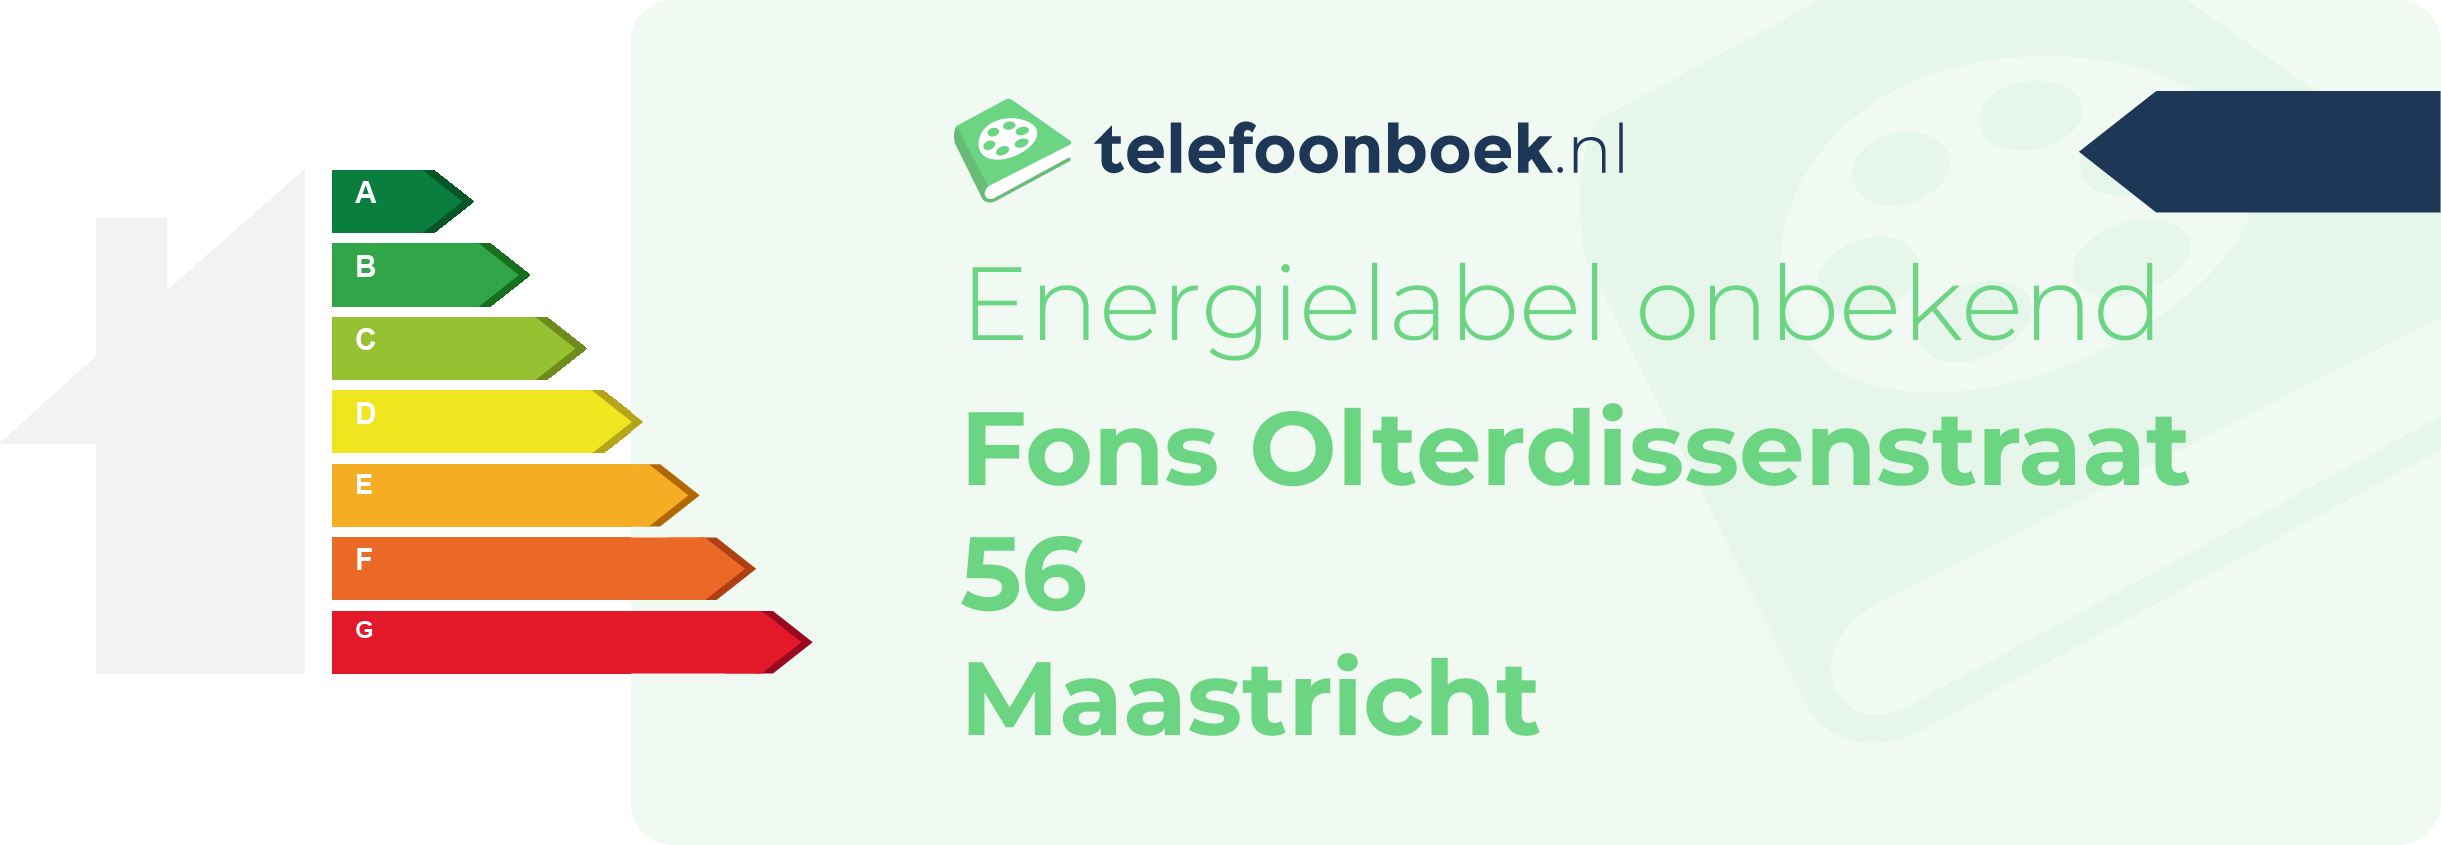 Energielabel Fons Olterdissenstraat 56 Maastricht